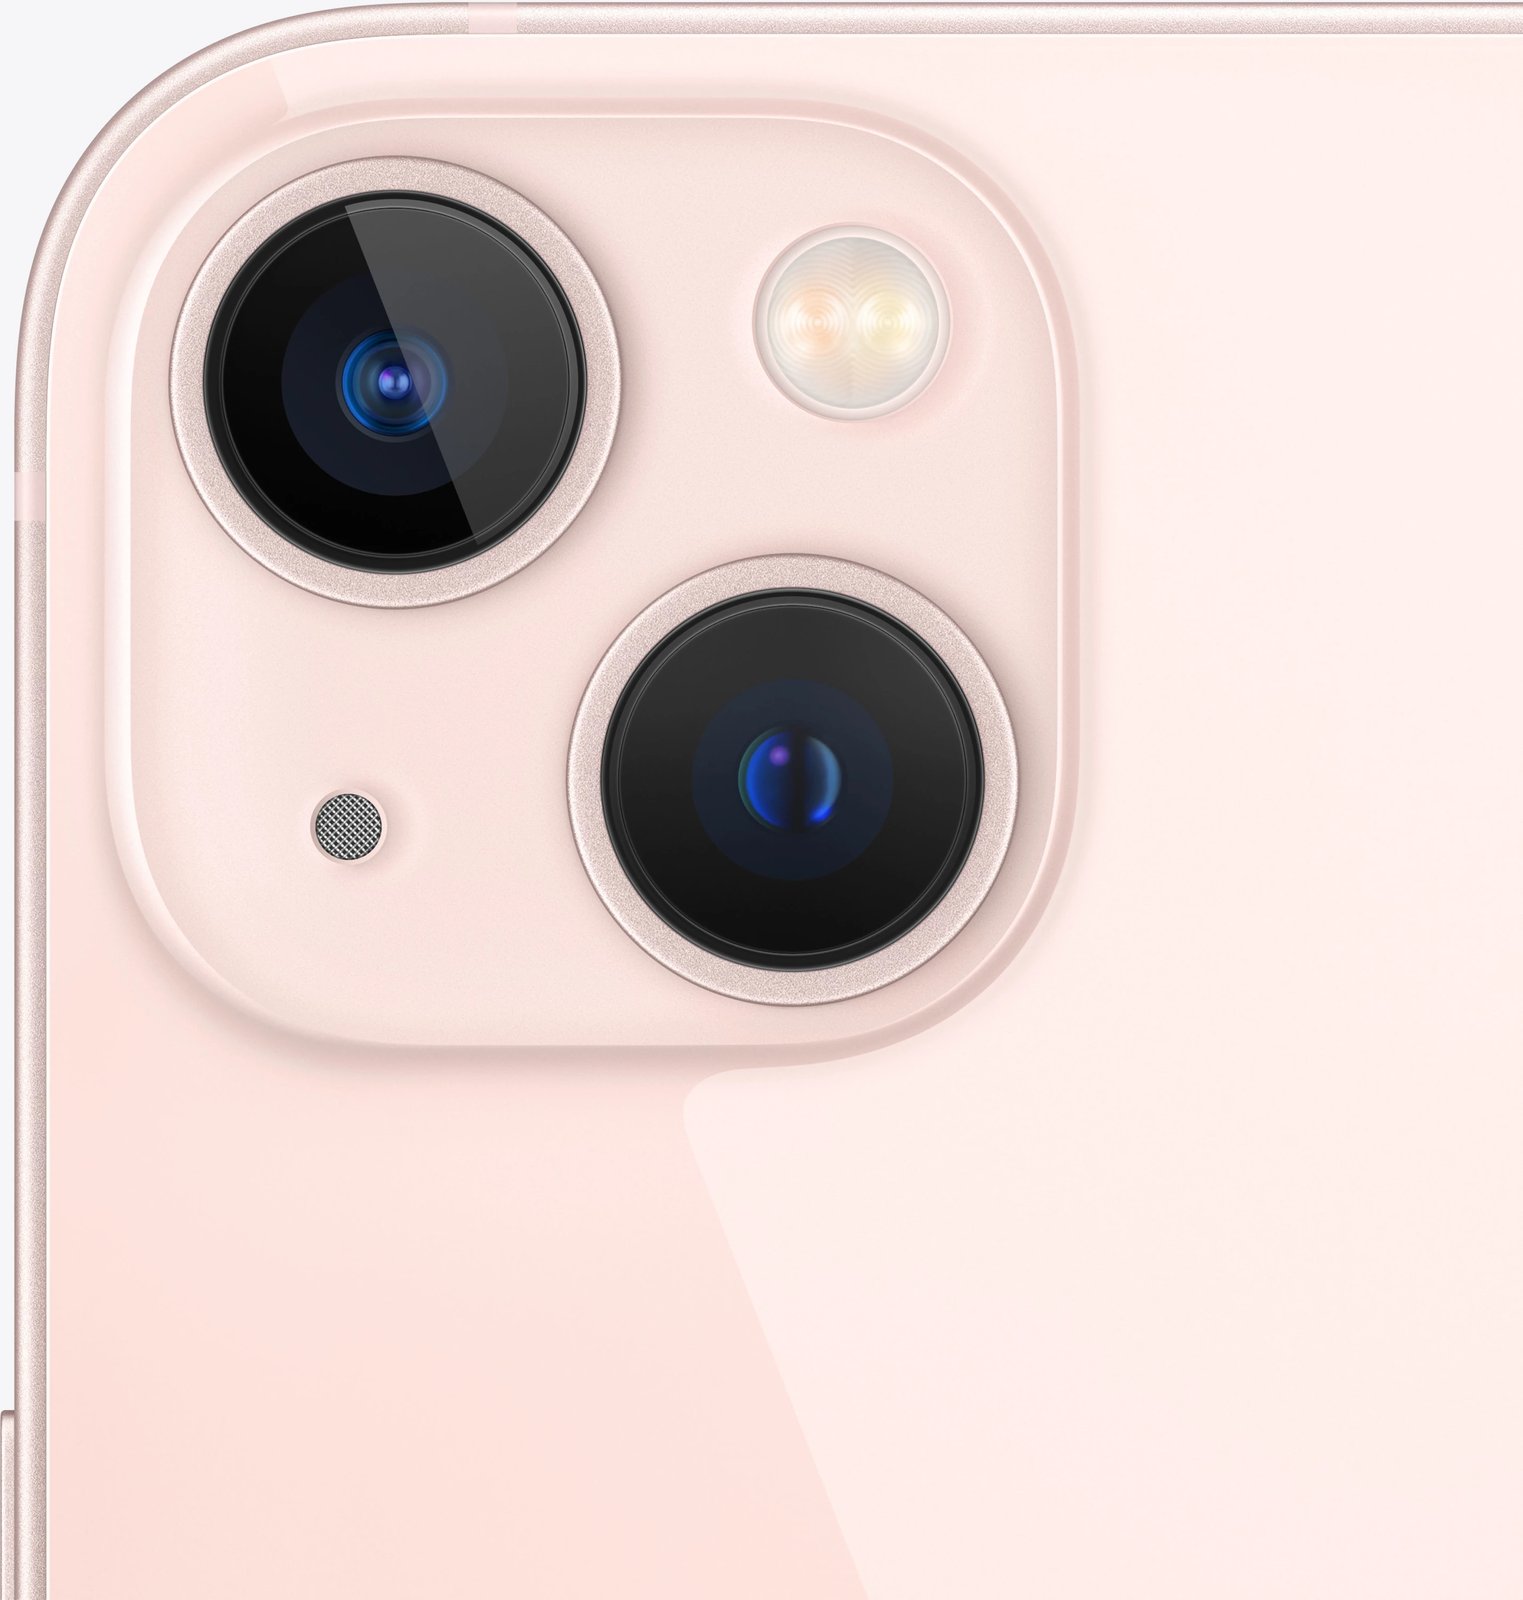 Celular Apple iPhone 13 Mini, 5.4", 128GB, rozë